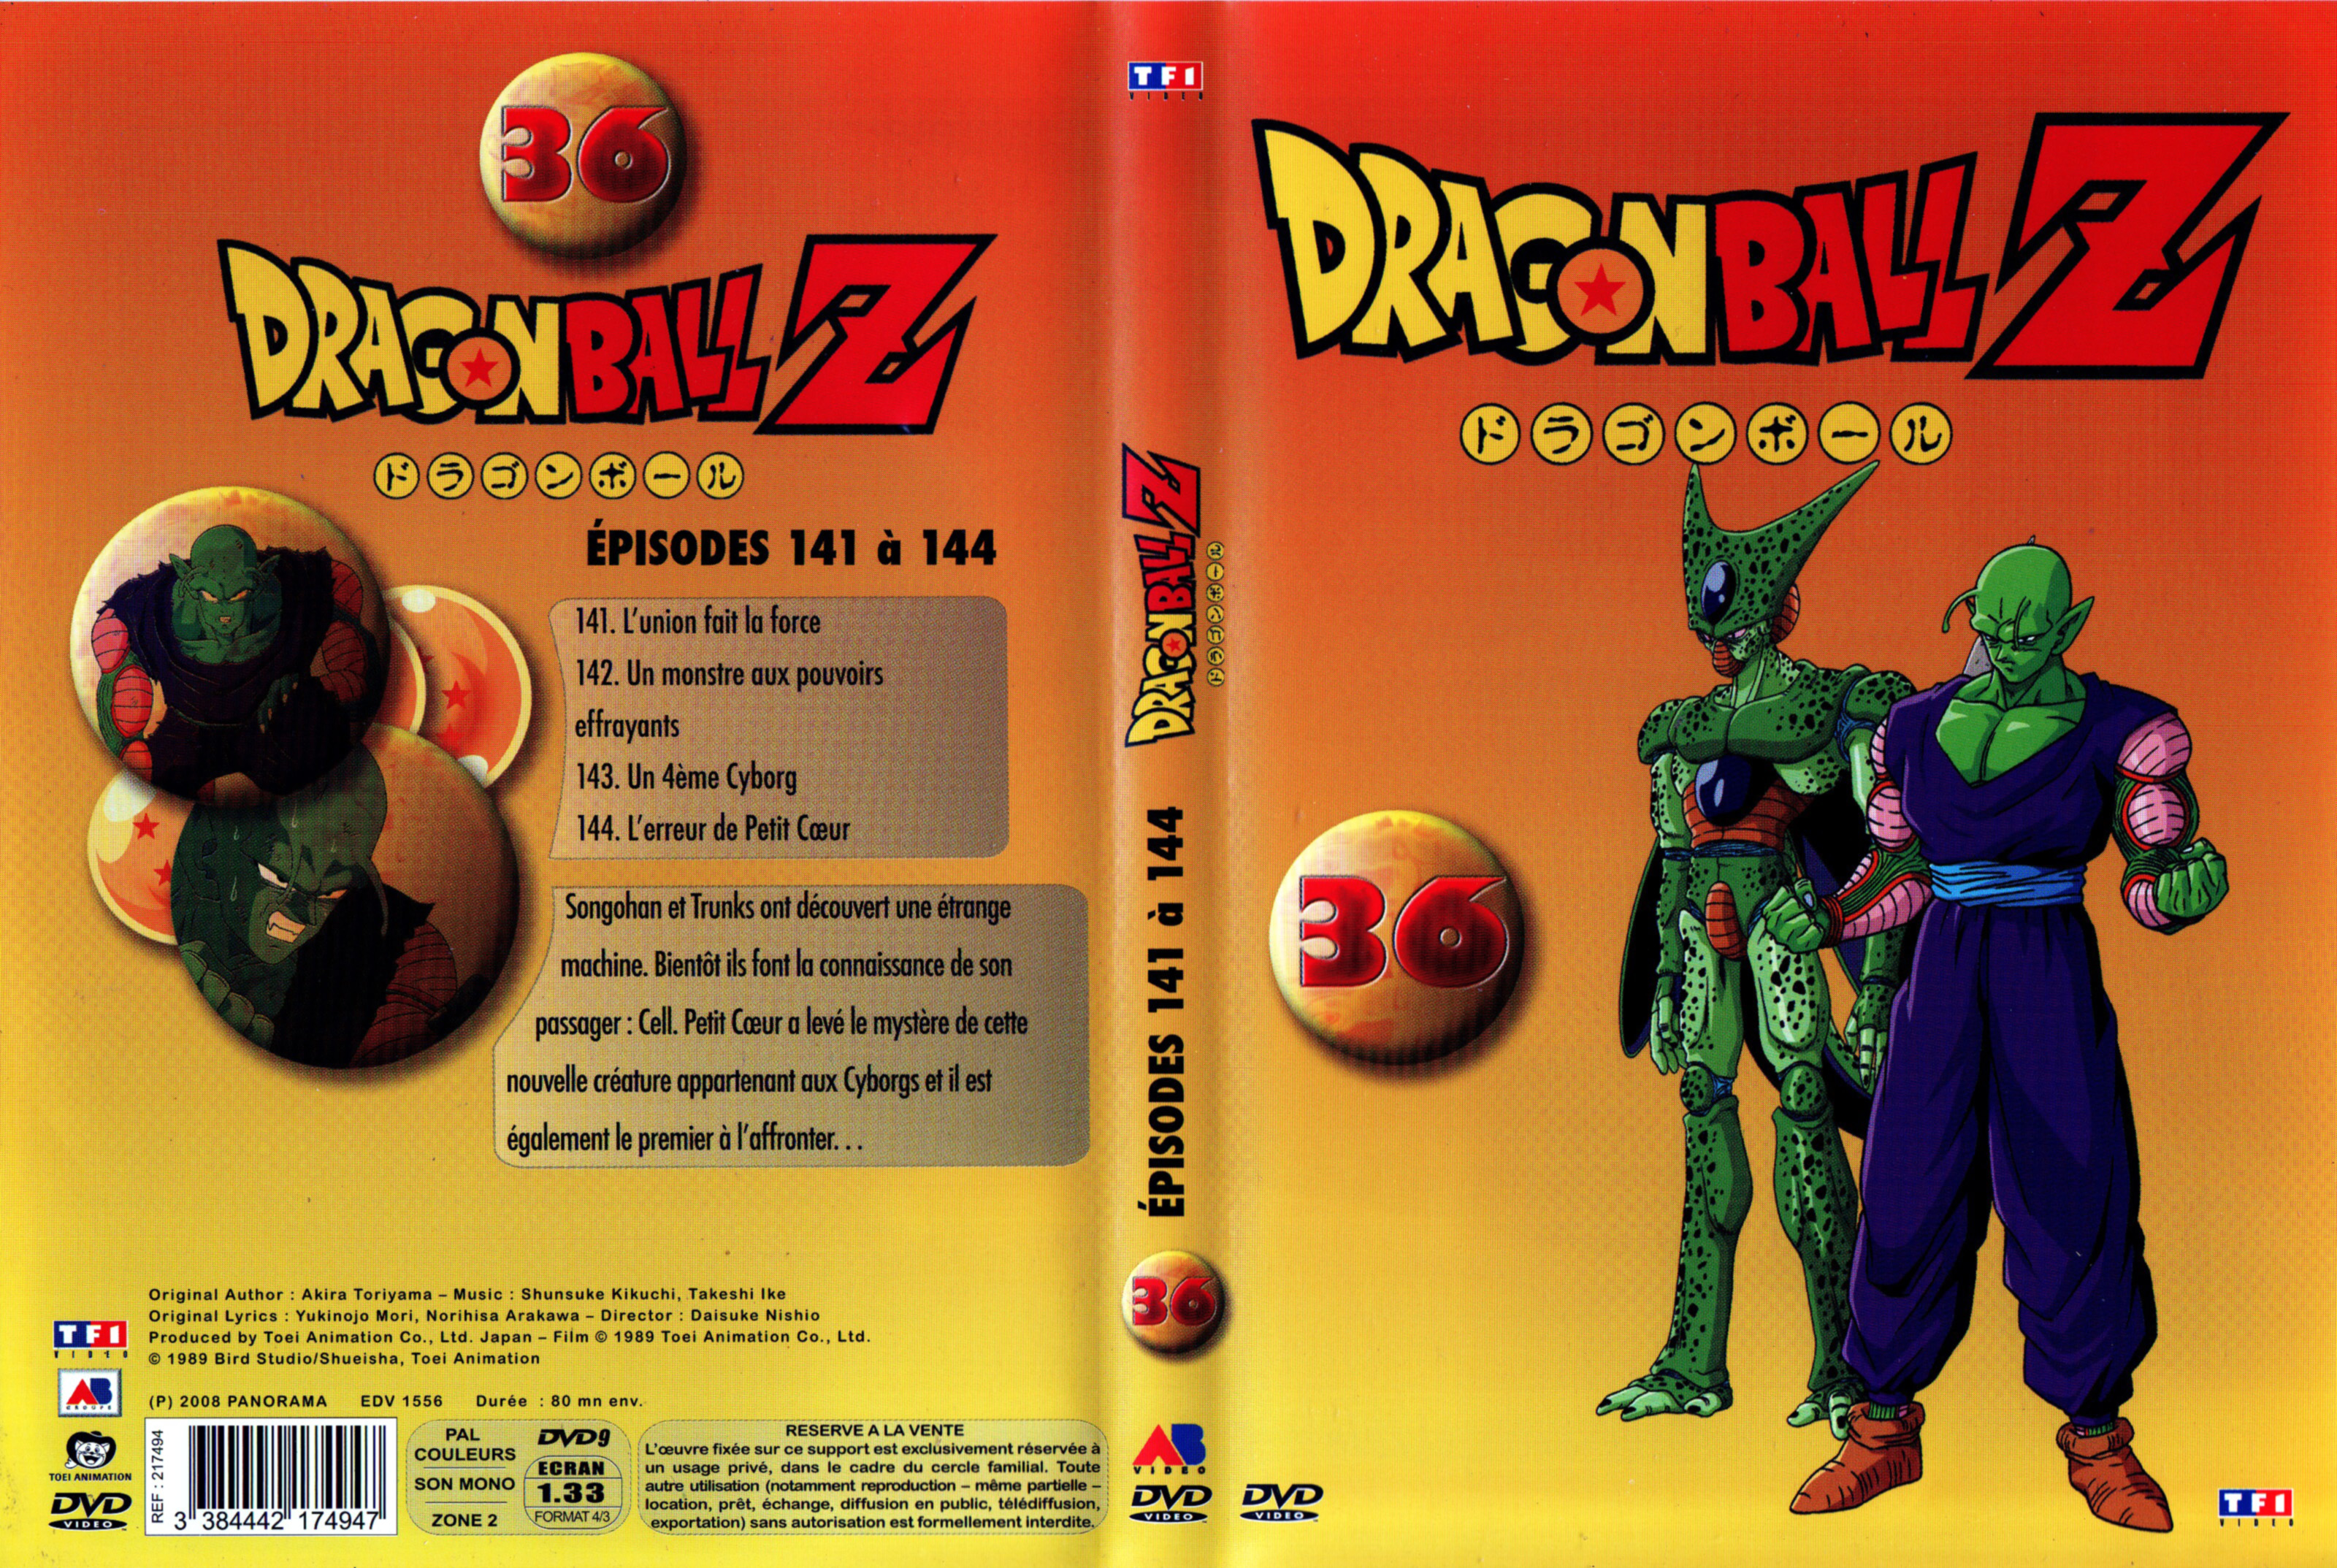 Jaquette DVD Dragon Ball Z vol 36 v2